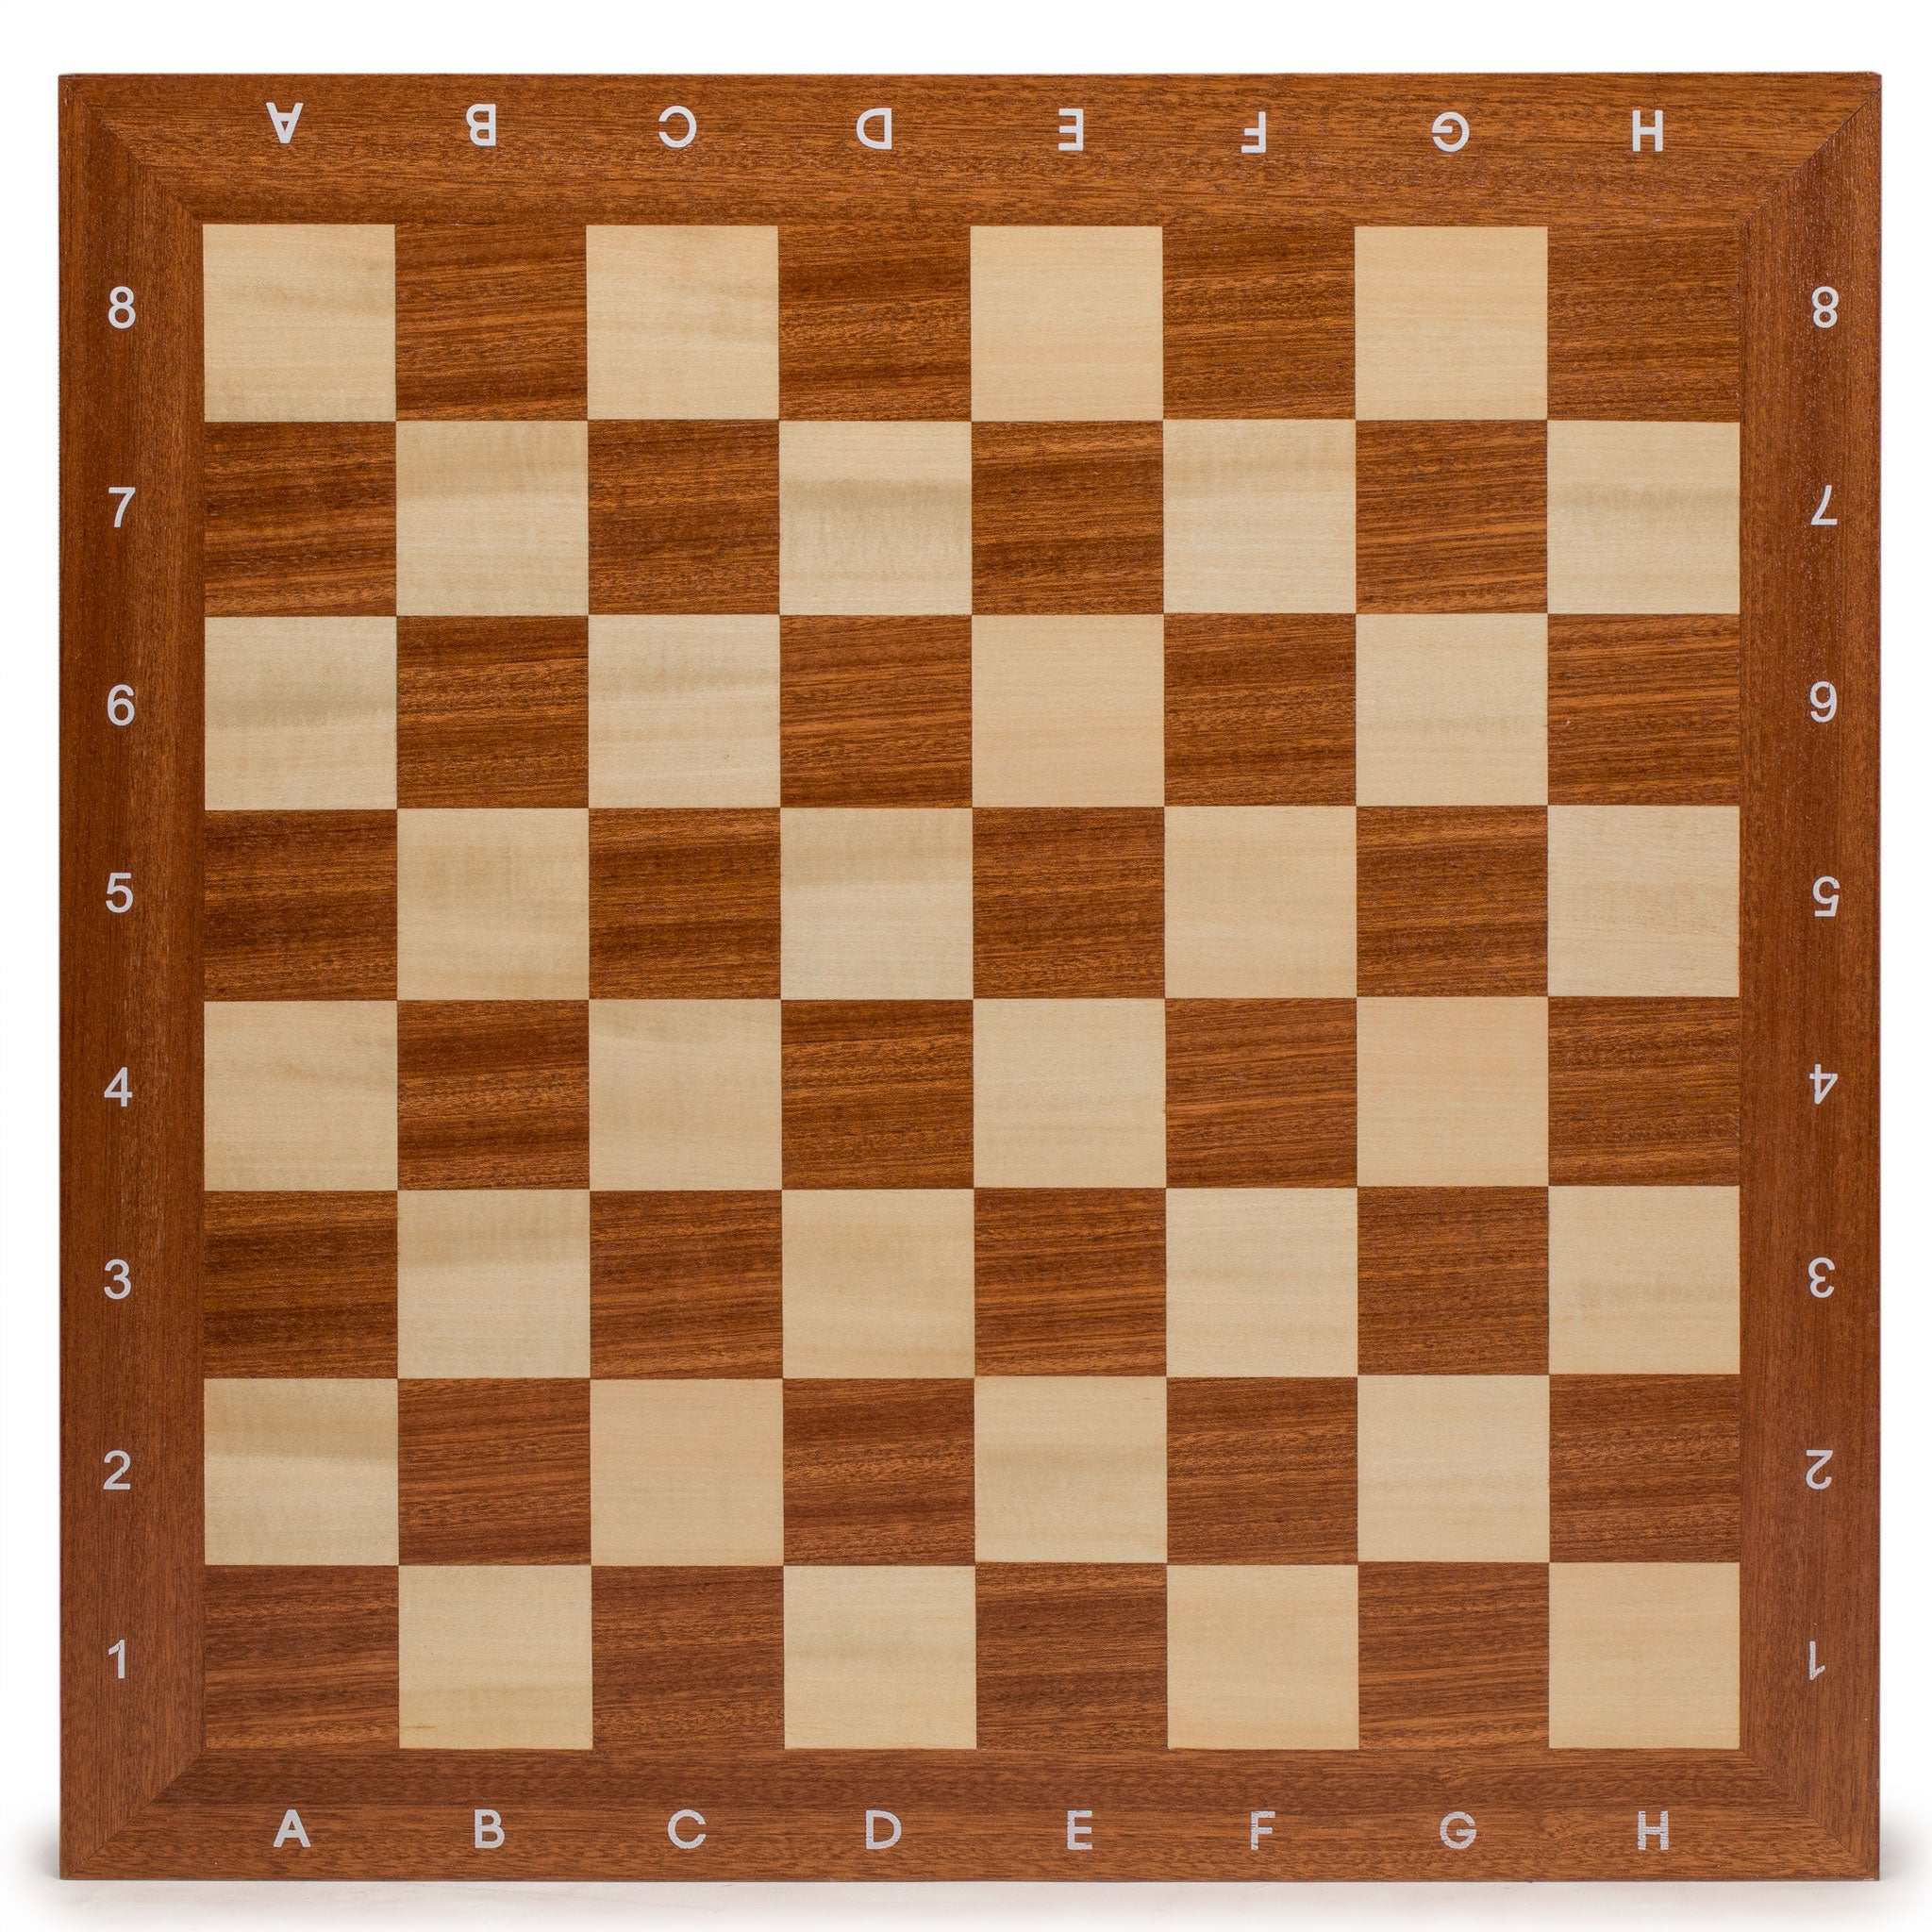 Husaria Professional Staunton Tournament Chess Board, No. 6, 21.3"